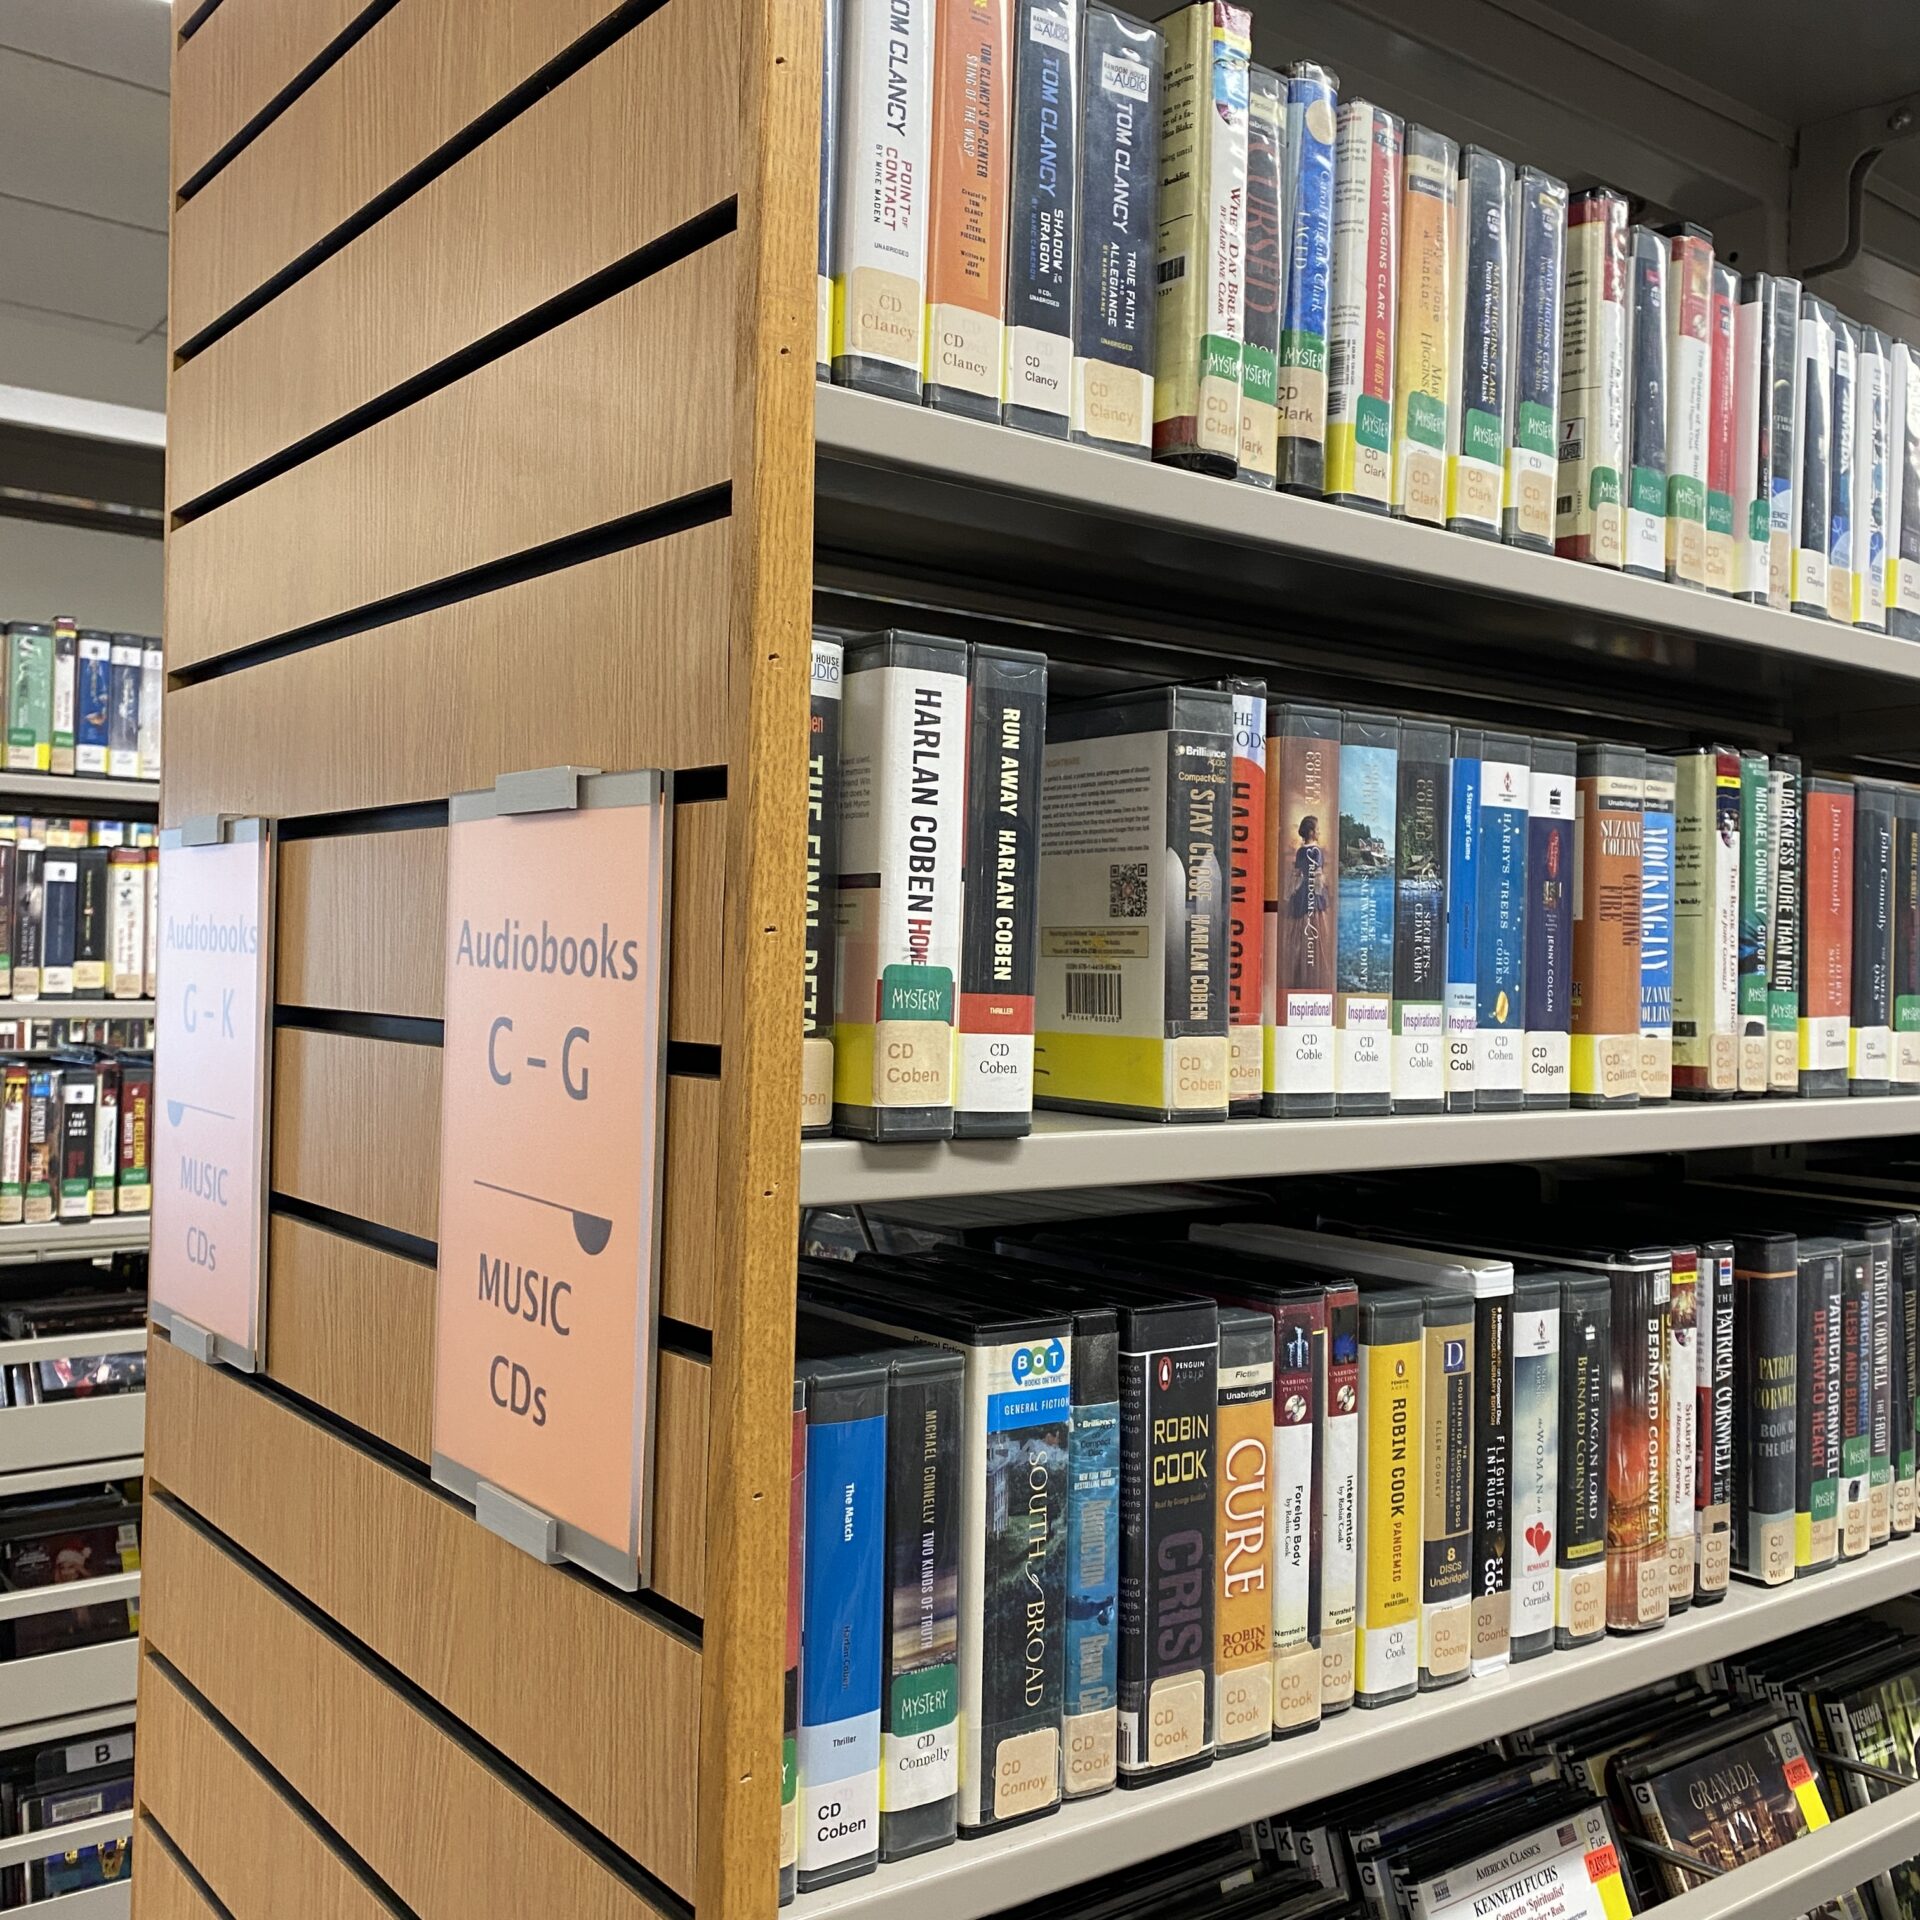 Shelves of Audiobooks